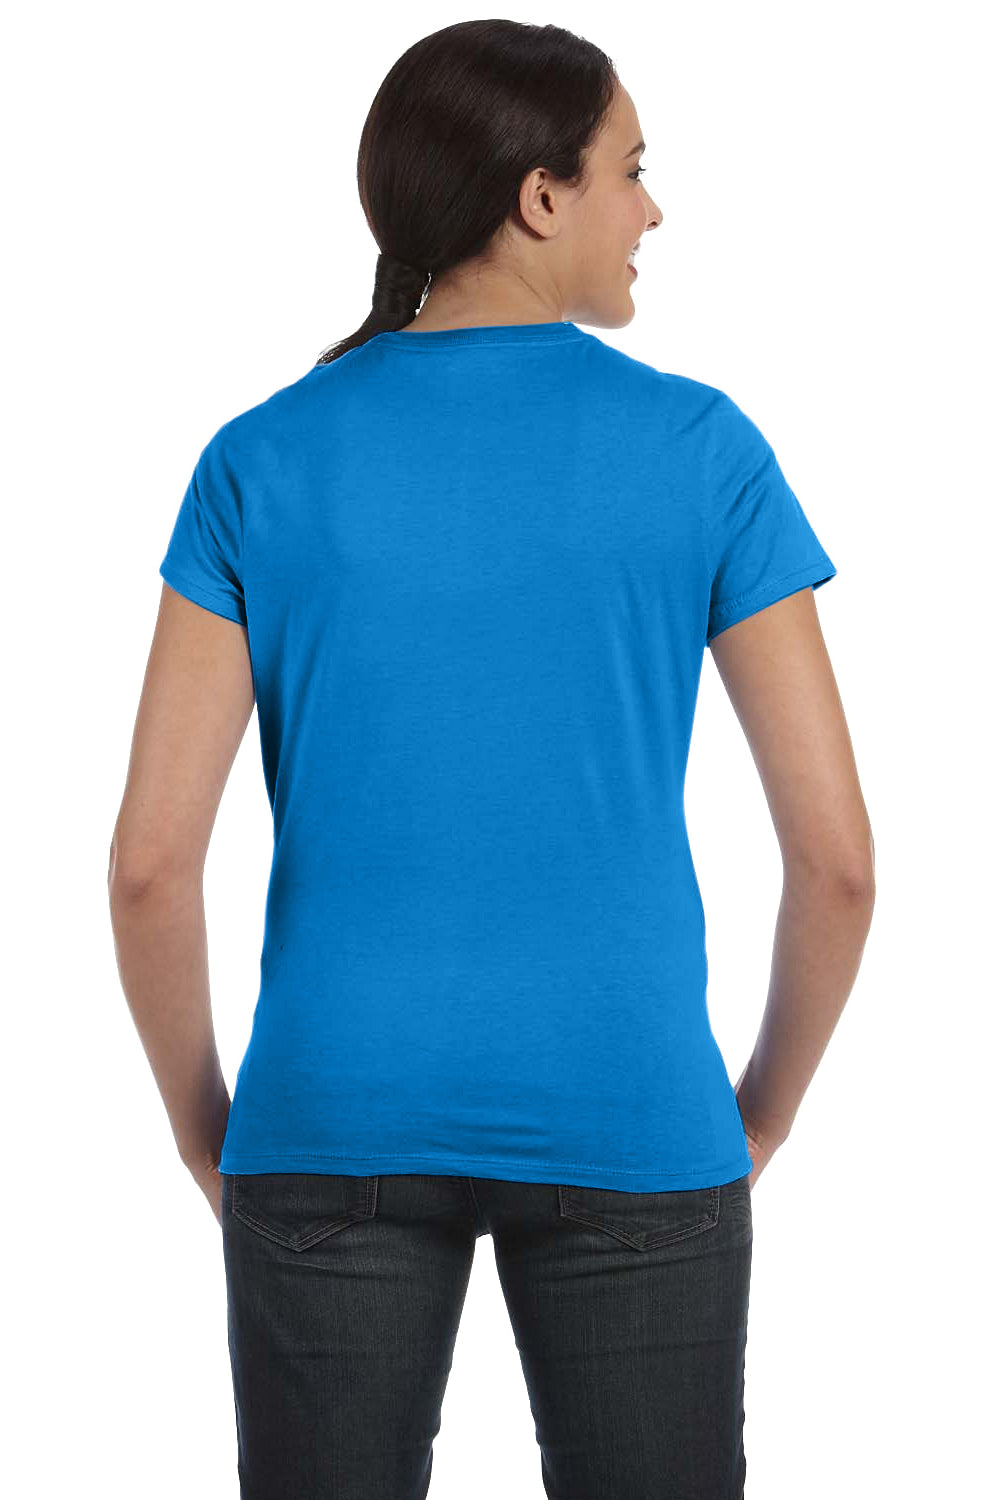 Hanes SL04 Nano-T Short Sleeve Crewneck T-Shirt Breeze Blue Back